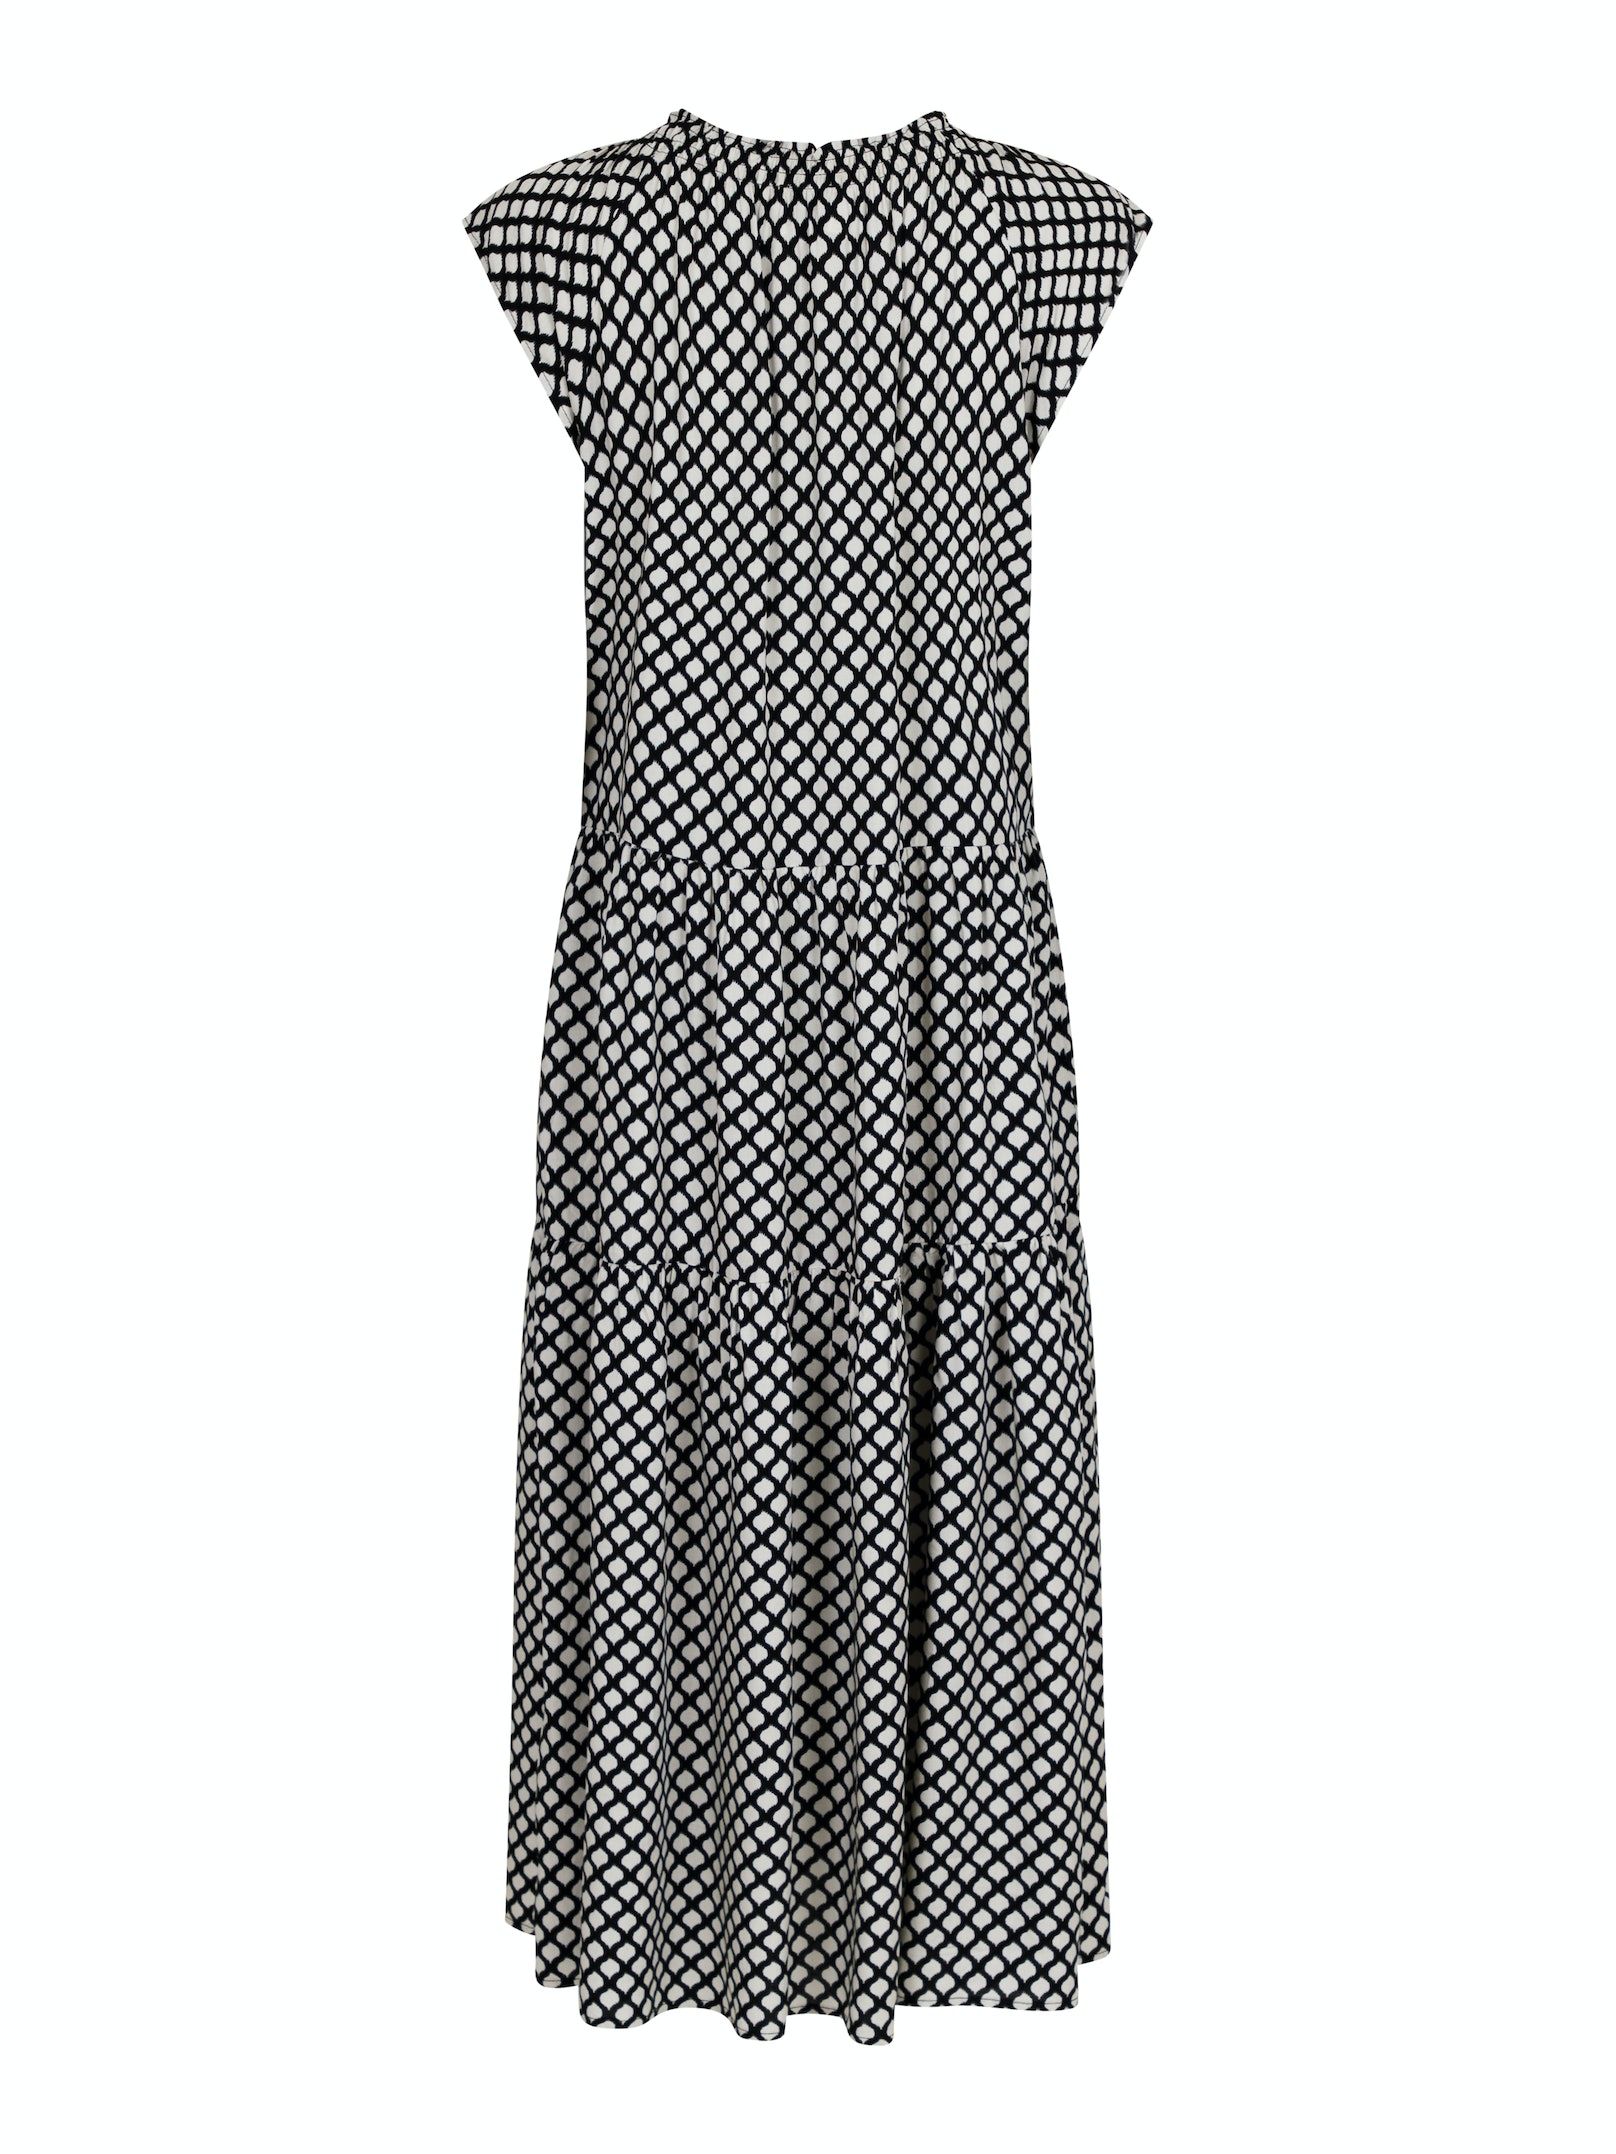 Neo Noir, maxi kjole i sort med grafisk print og korte ærmer, bagfra.